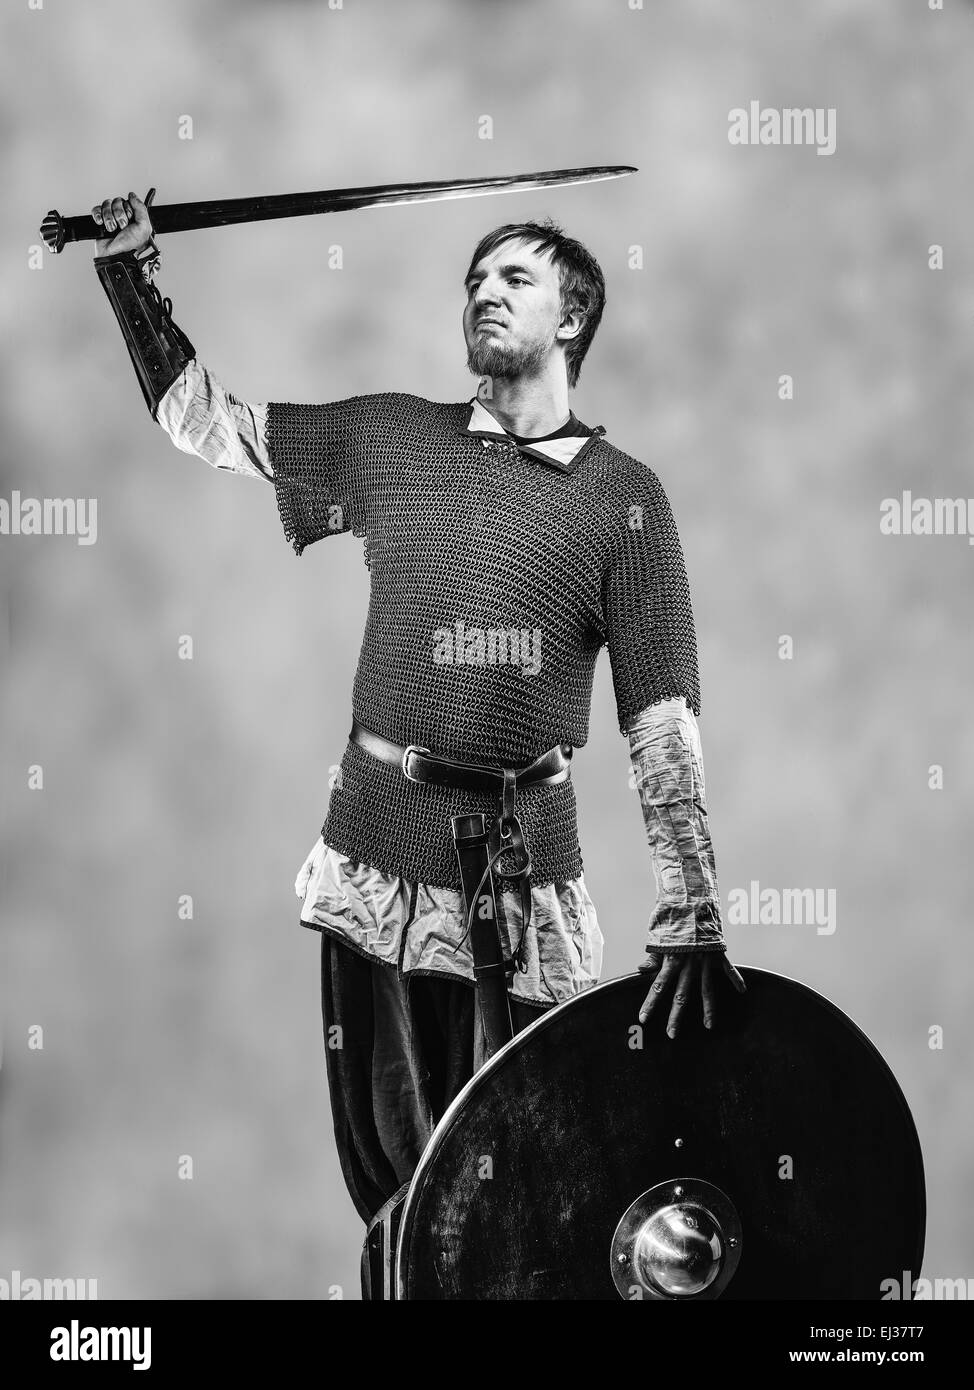 Siegreiche mittelalterlichen Ritterrüstung mit Schwert und Schild, schwarz / weiß Bild Stockfoto